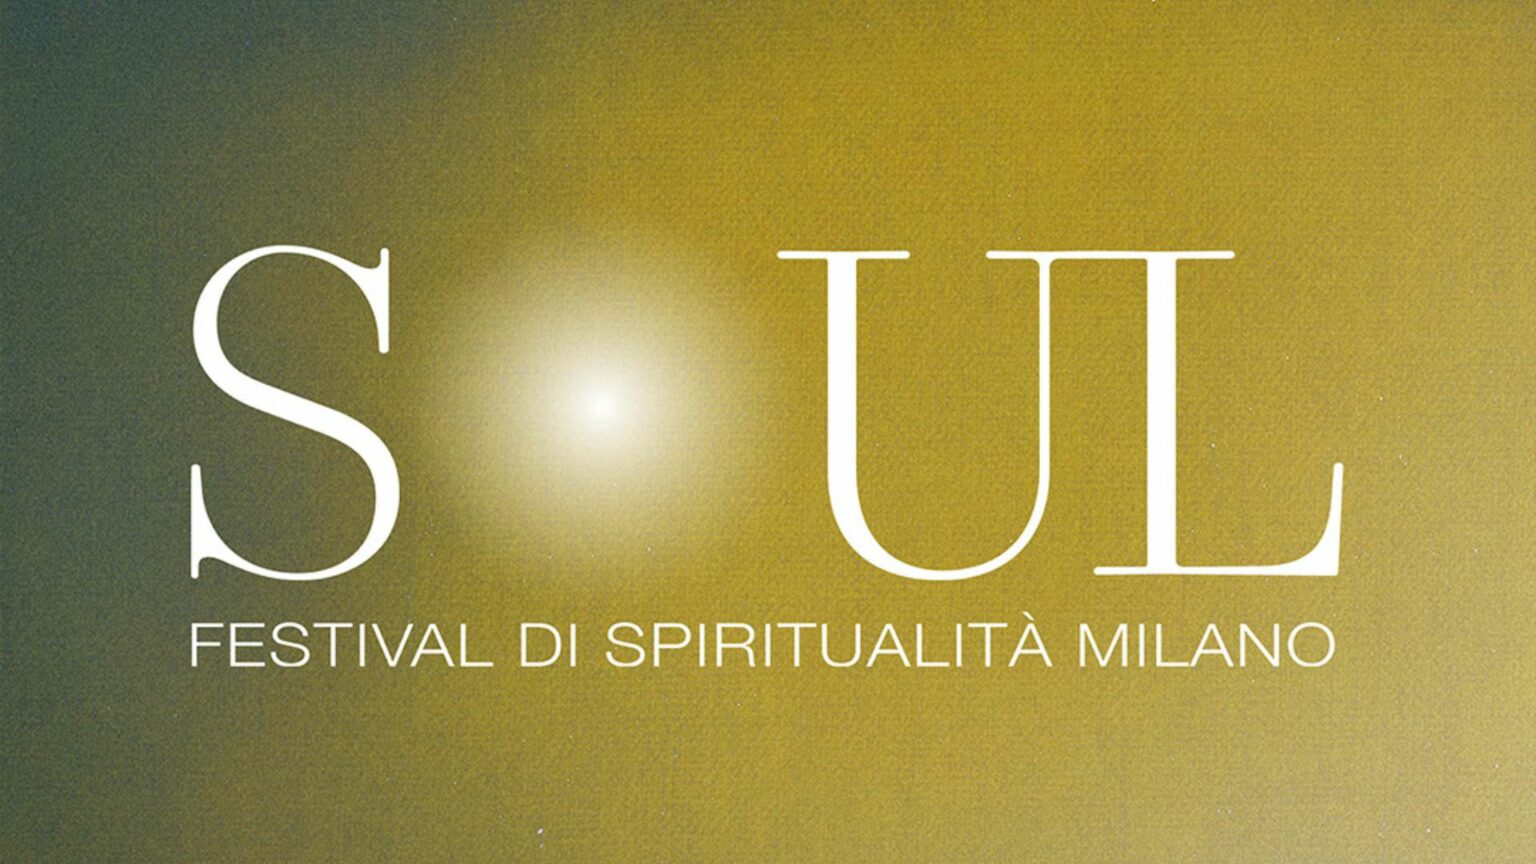 soul festival di spiritualità